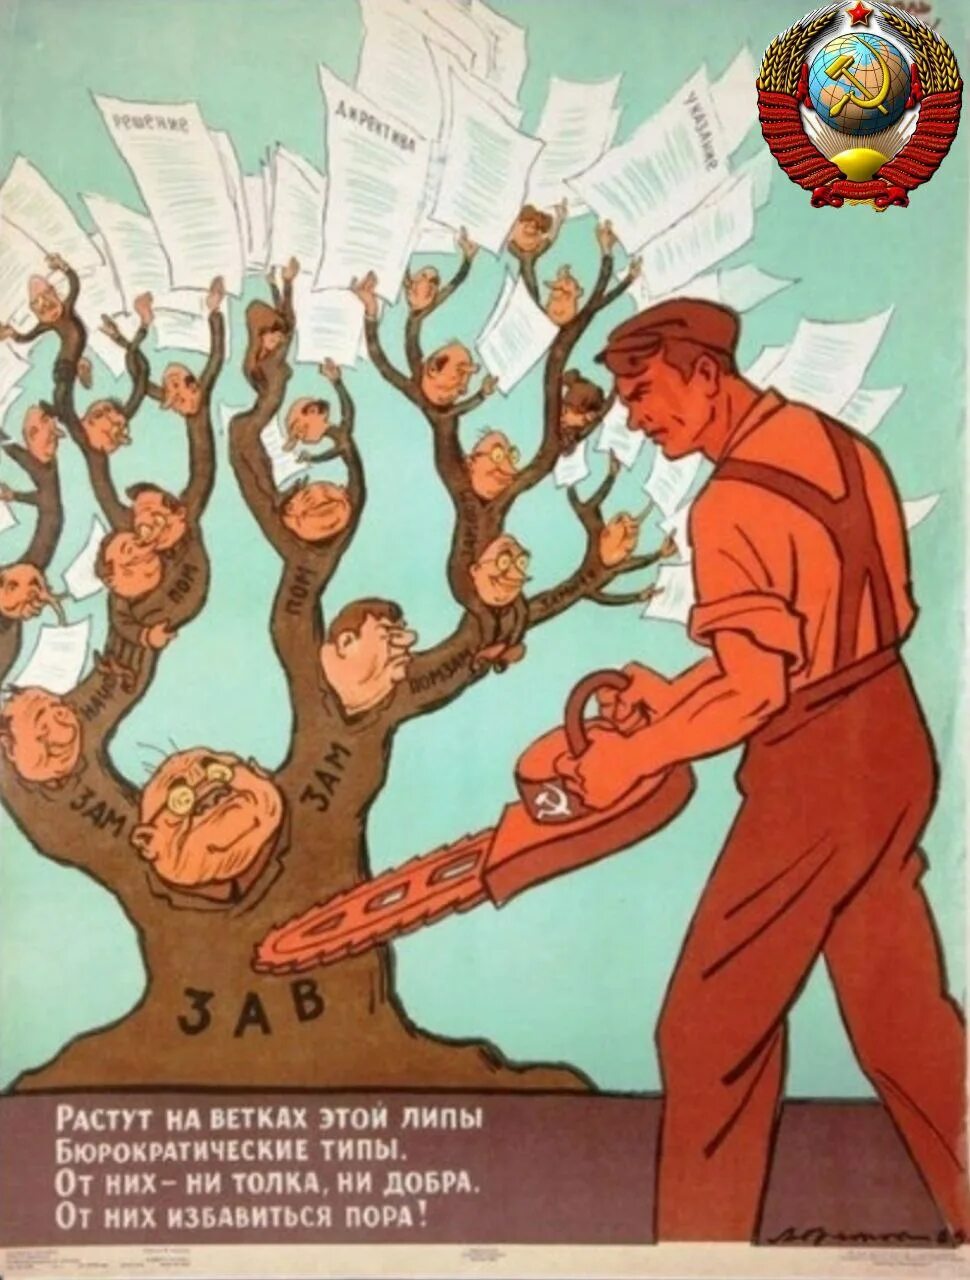 Растут на ветках этой липы бюрократические. Растут на ветках этой липы бюрократические типы. Плакаты с сокращениями. Бюрократия плакат СССР.